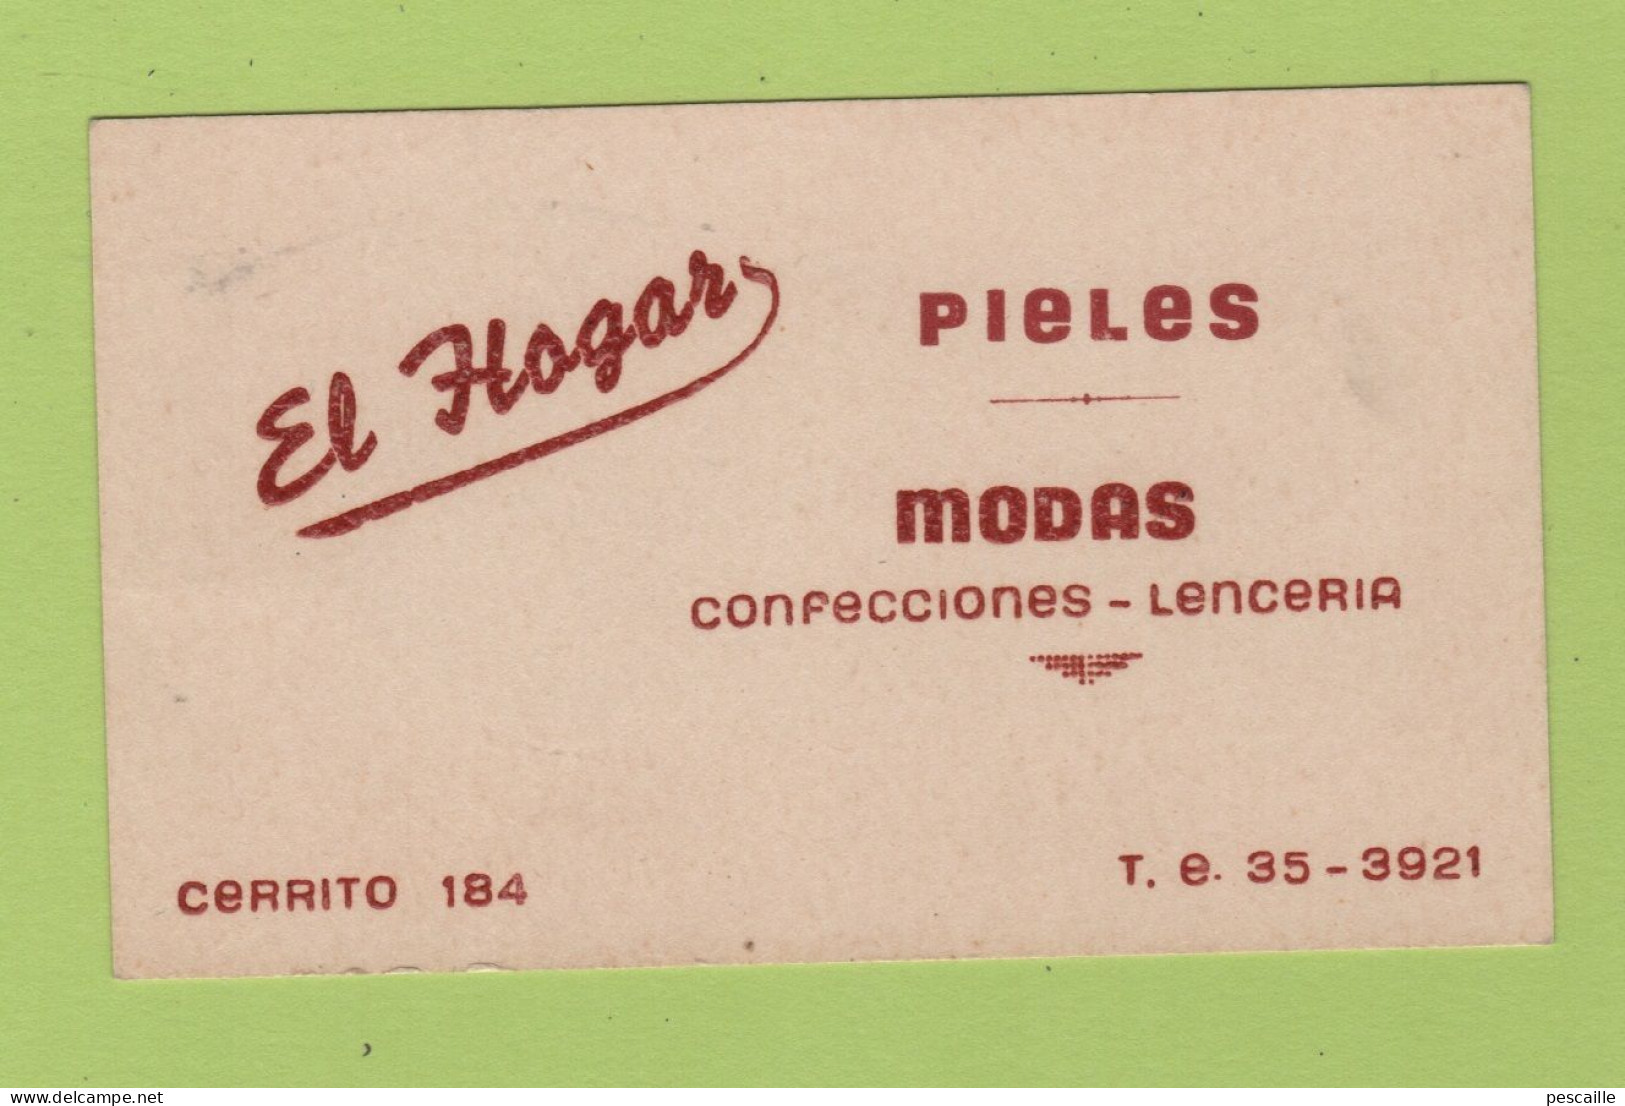 CARTE COMMERCIALE A LOCALISER EL HOGAR - PIELES / MODAS CONFECCIONES LENCERIA / CERRITO 184 / T.E. 35-3921 - Cartes De Visite